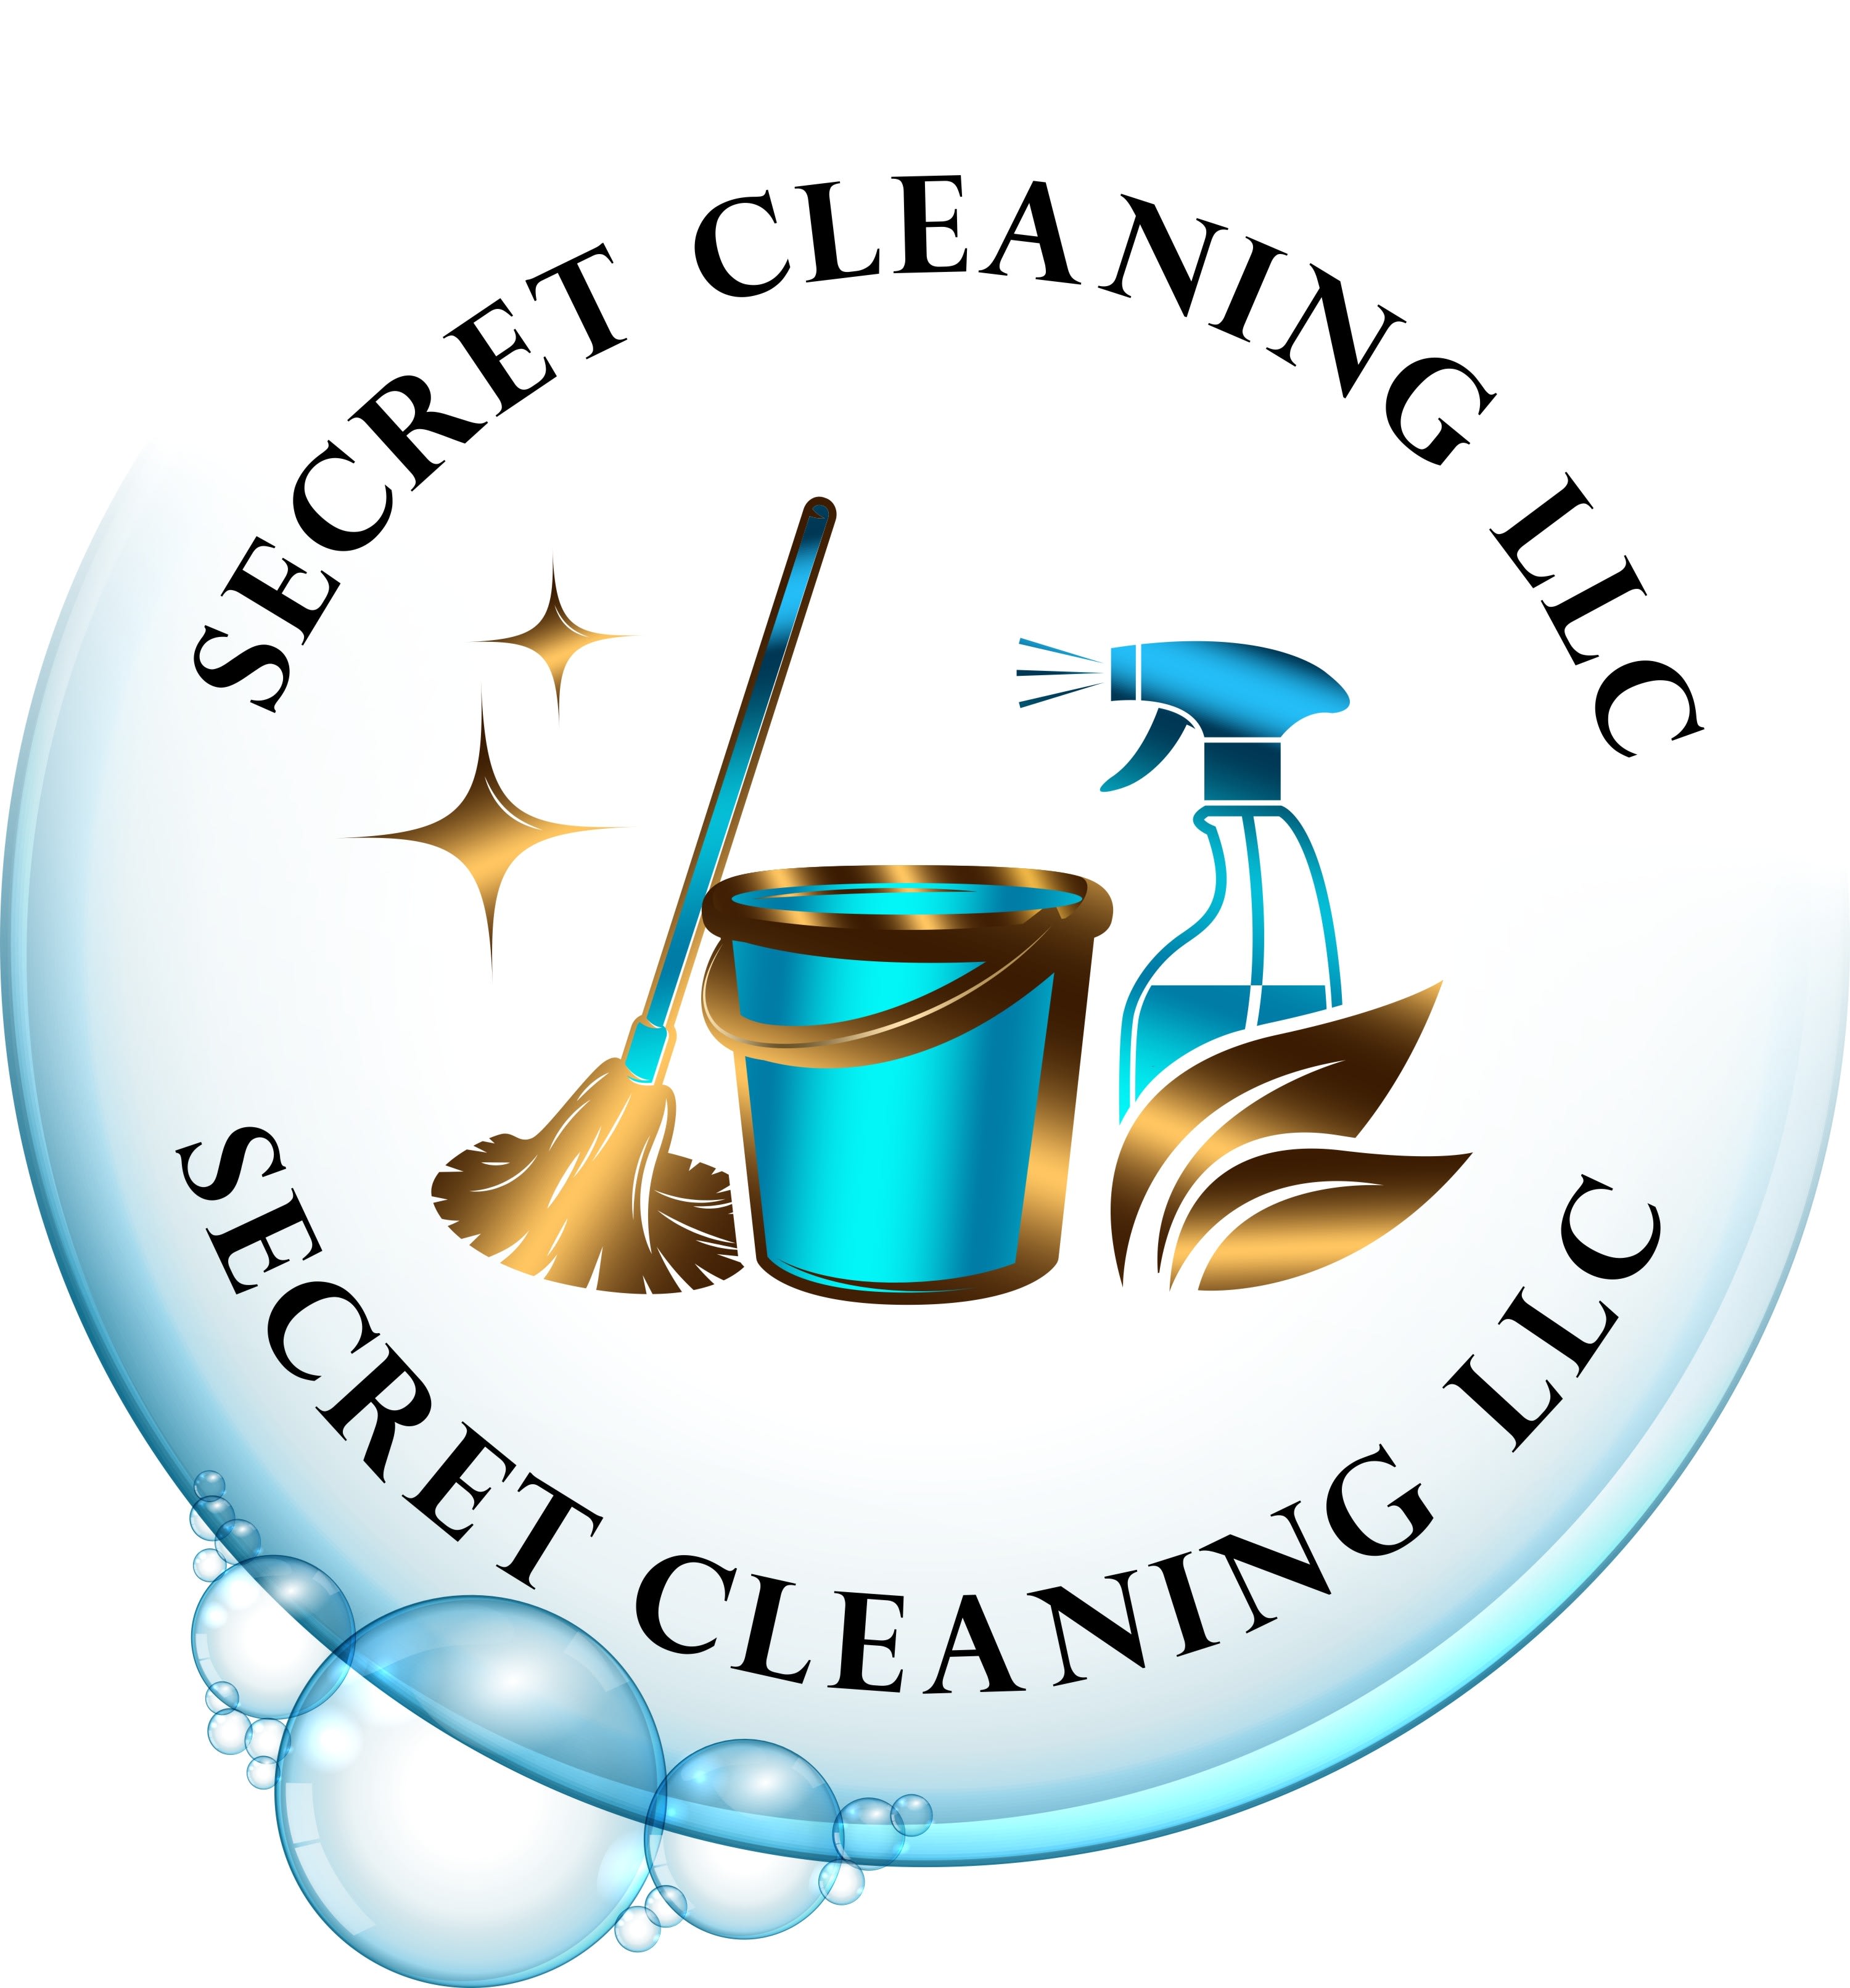 Secret Cleaning LLC